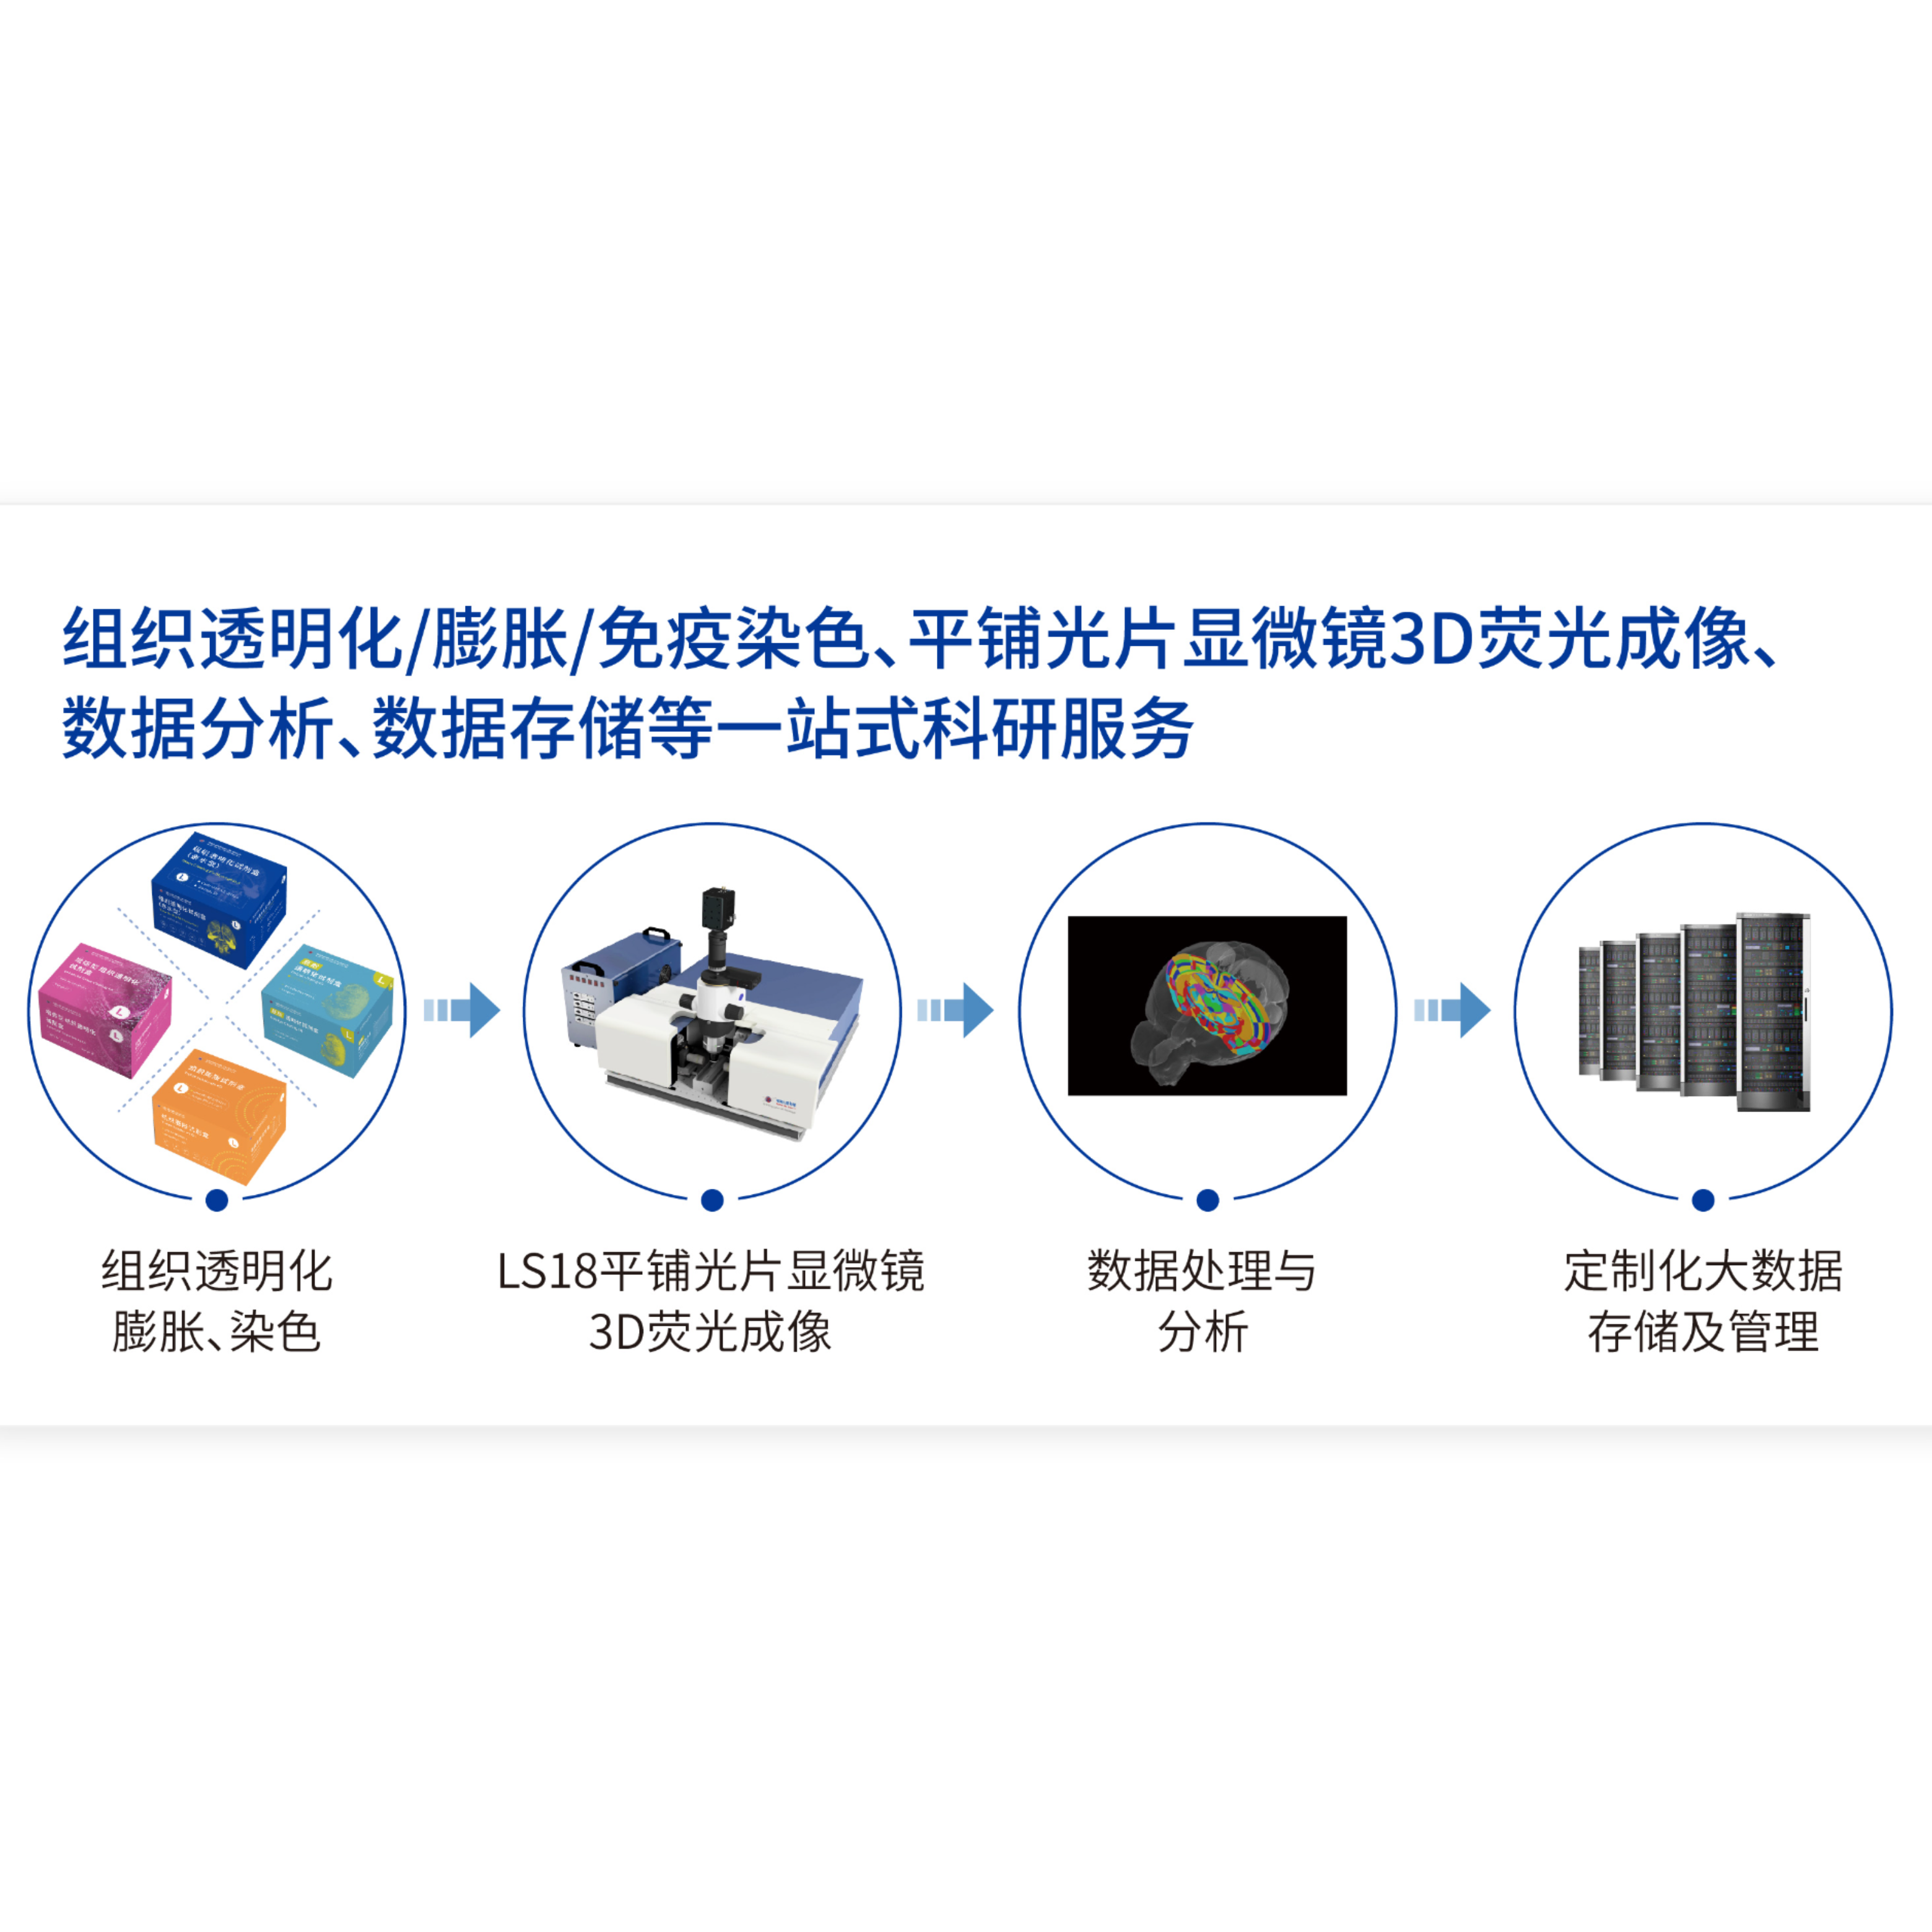 锘海Nuohai科研服务 组织透明化、免疫染色、3D成像、数据分析及存储